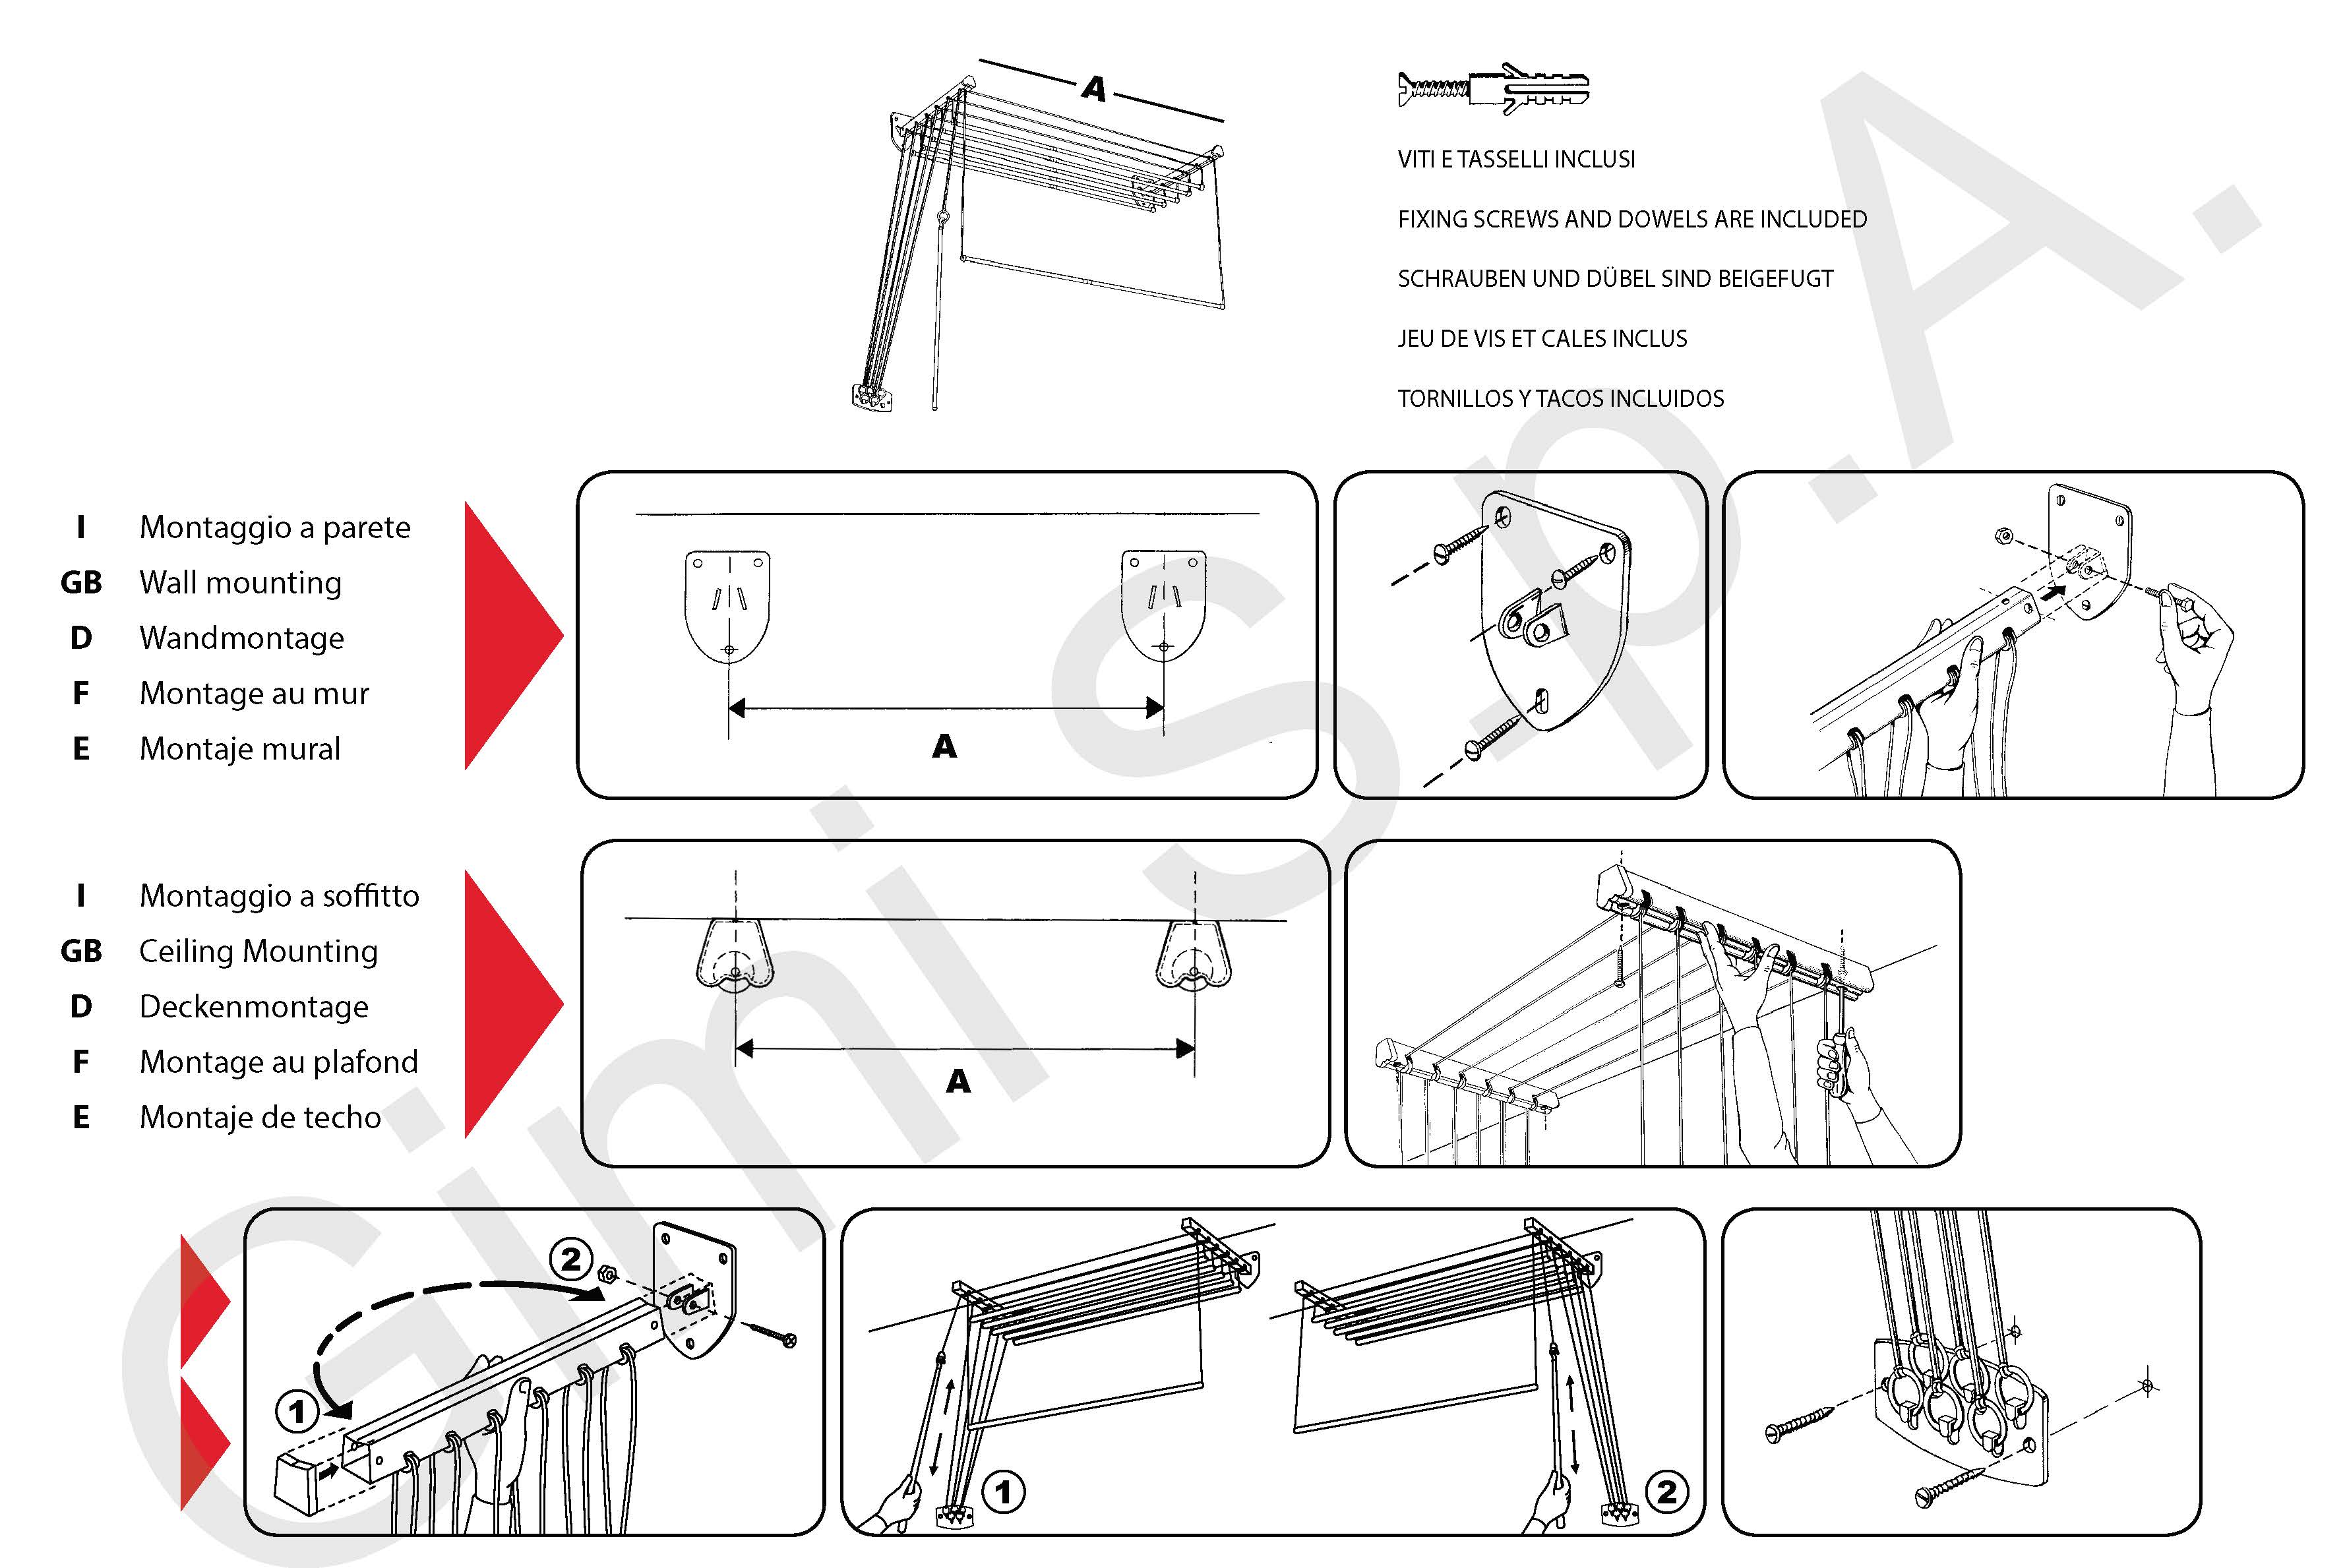 Сушилки для потолка: выбираем на балкон самую лучшую | онлайн-журнал о ремонте и дизайне